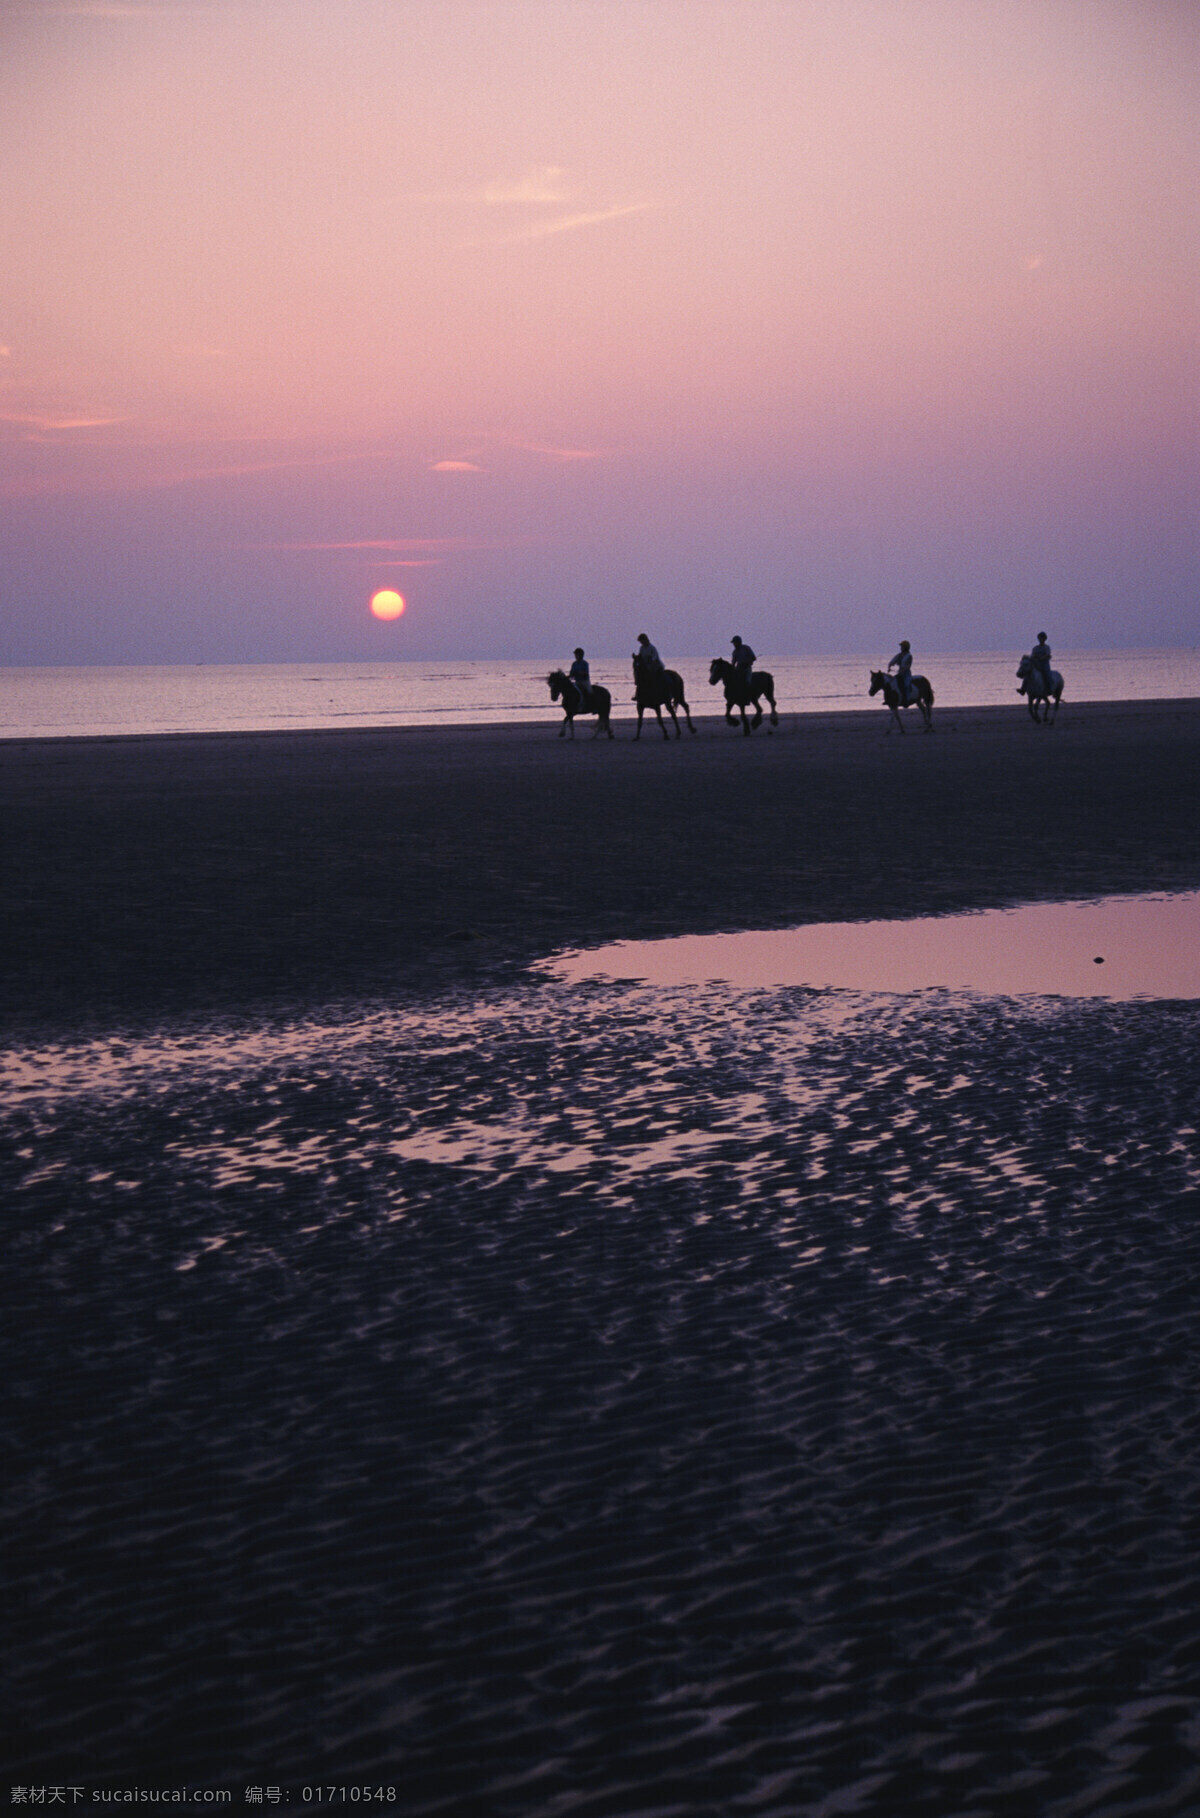 黄昏沙滩骑马 海边黄昏 骑马 海景 海水 自然景观 自然风景